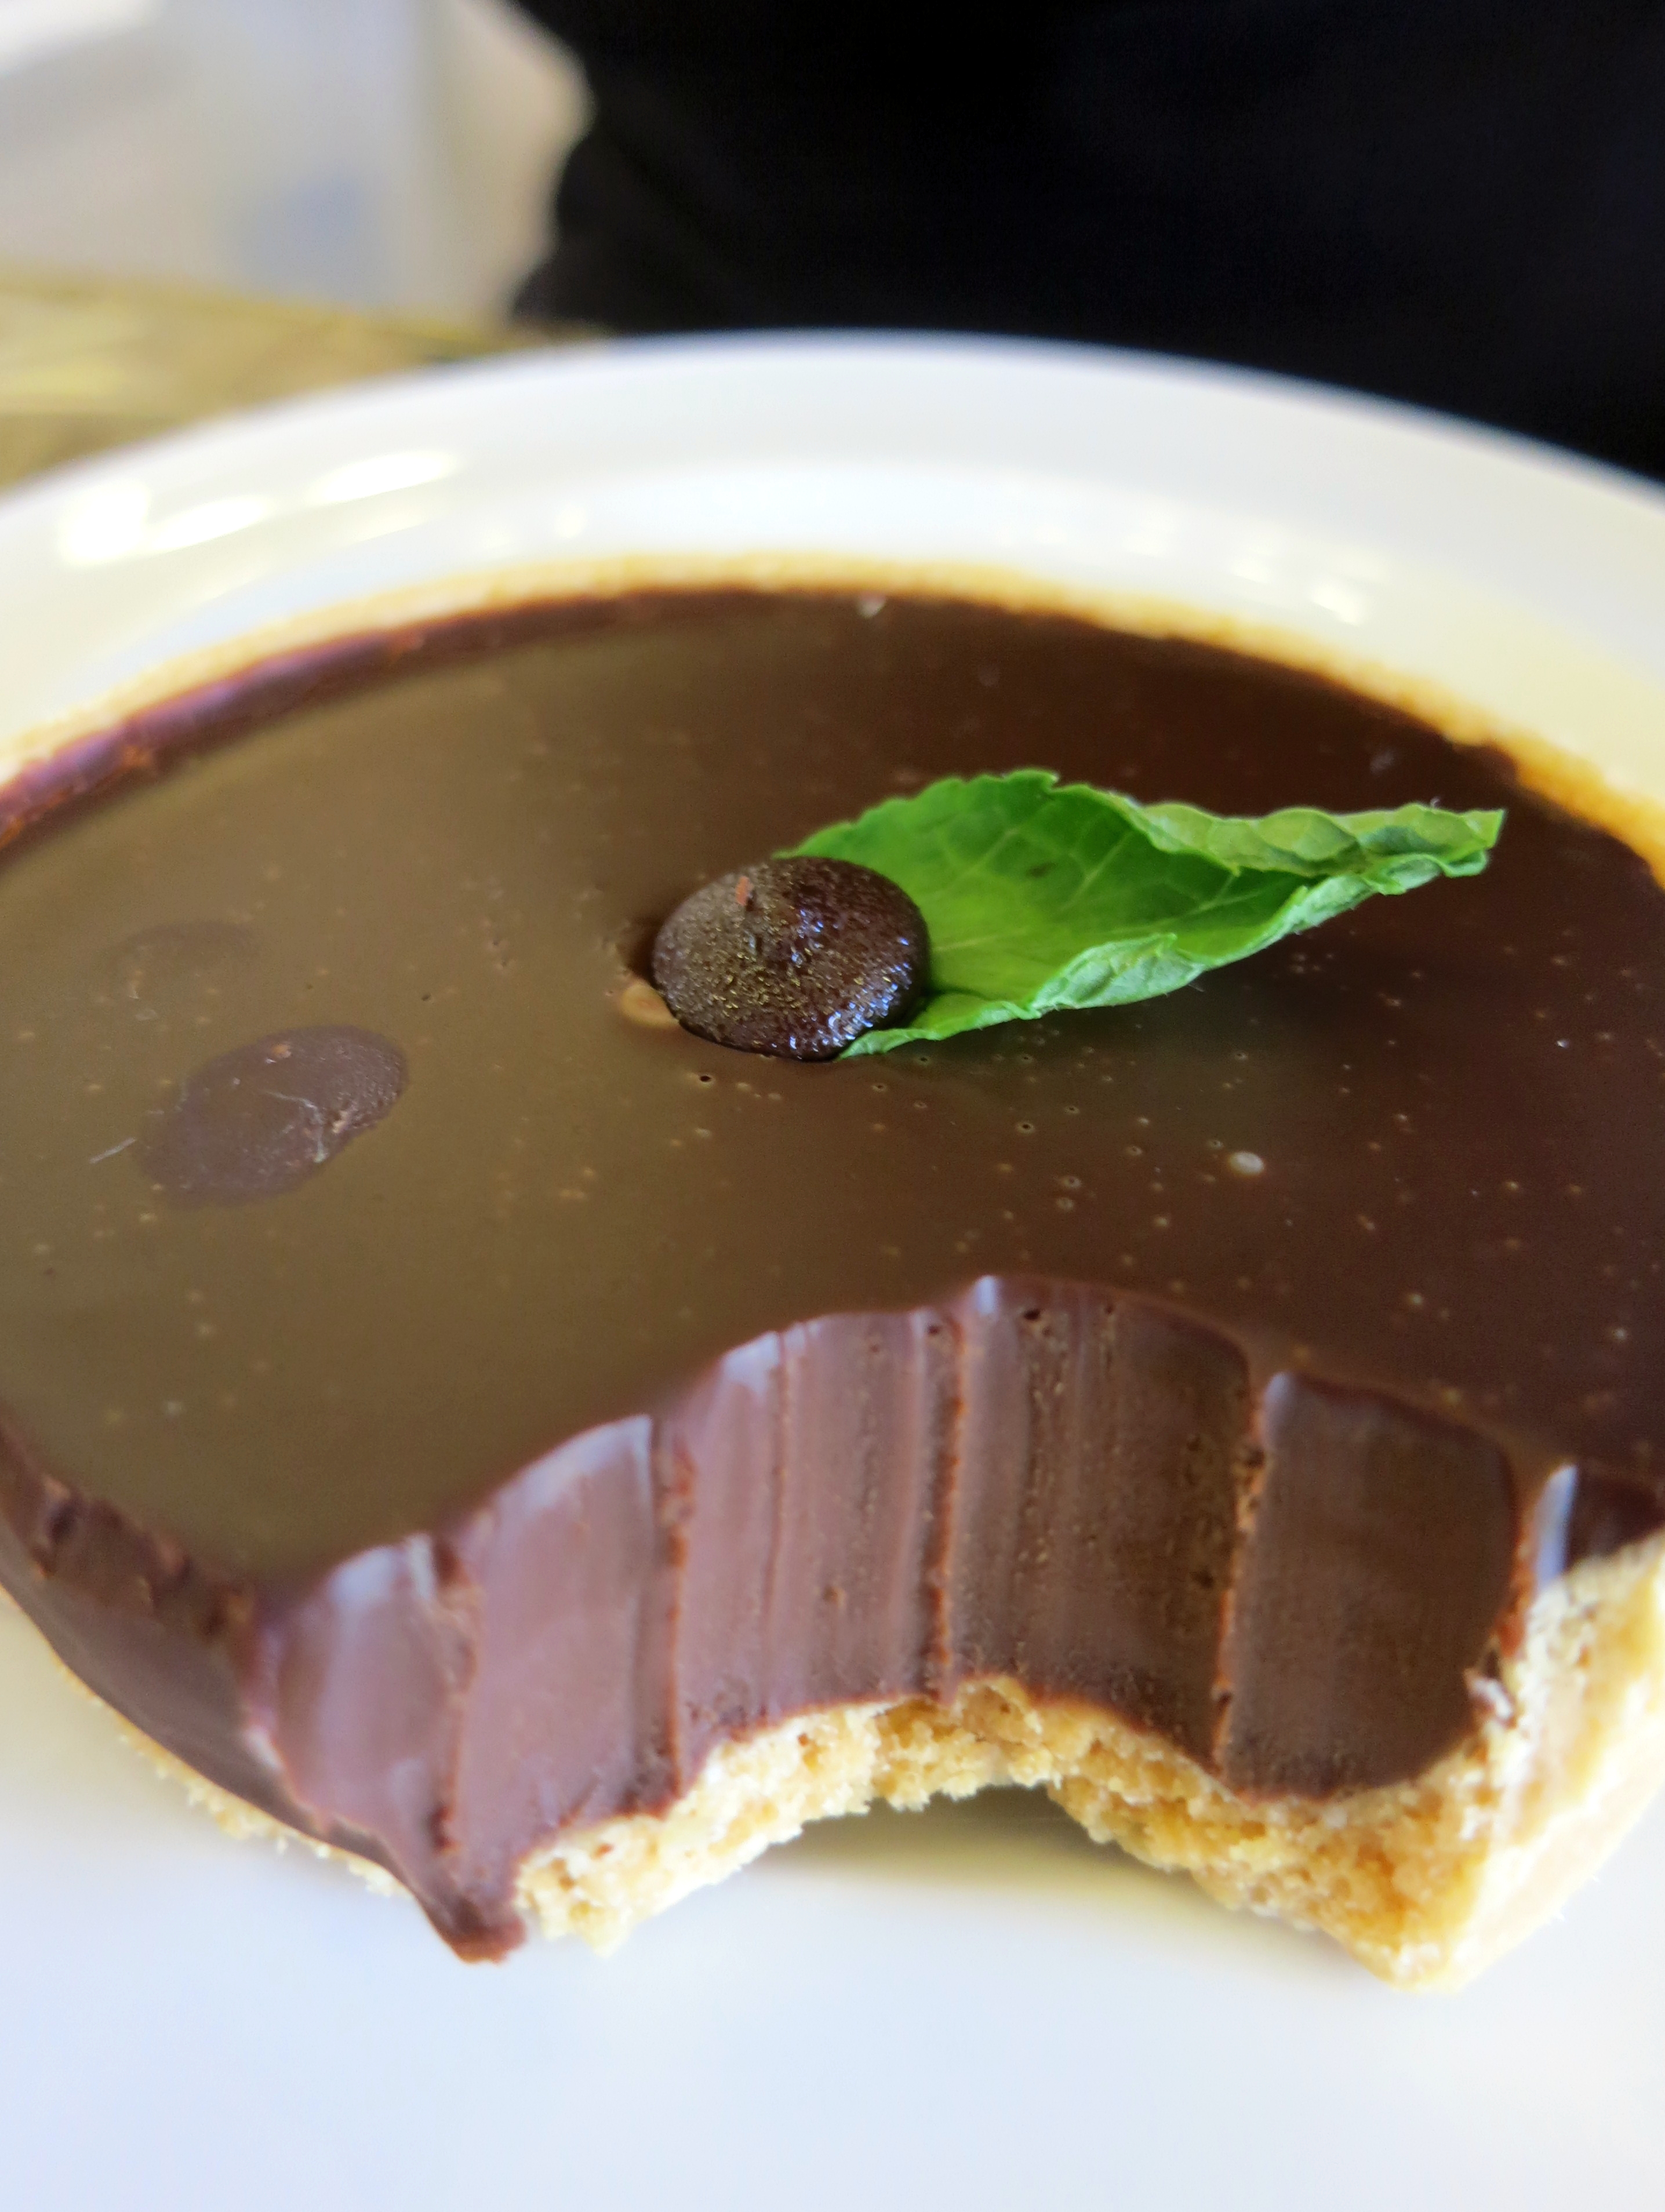 Mint chocolate - Wikipedia